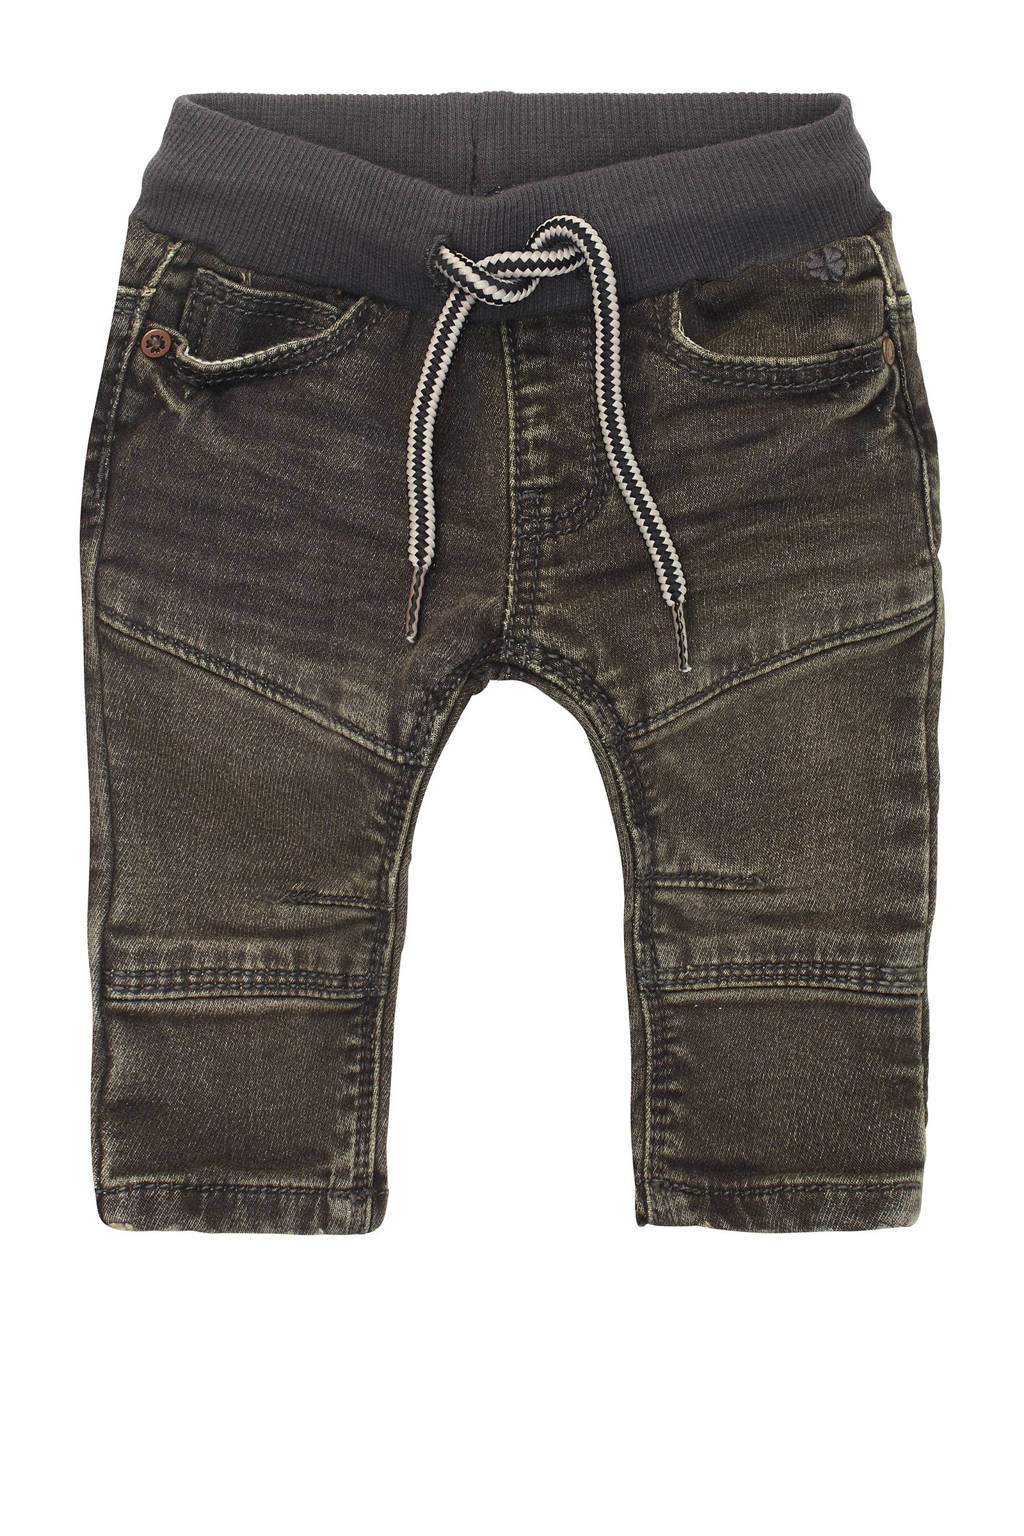 Noppies baby regular fit jeans Rozewie grijs stonewashed, Grijs stonewashed